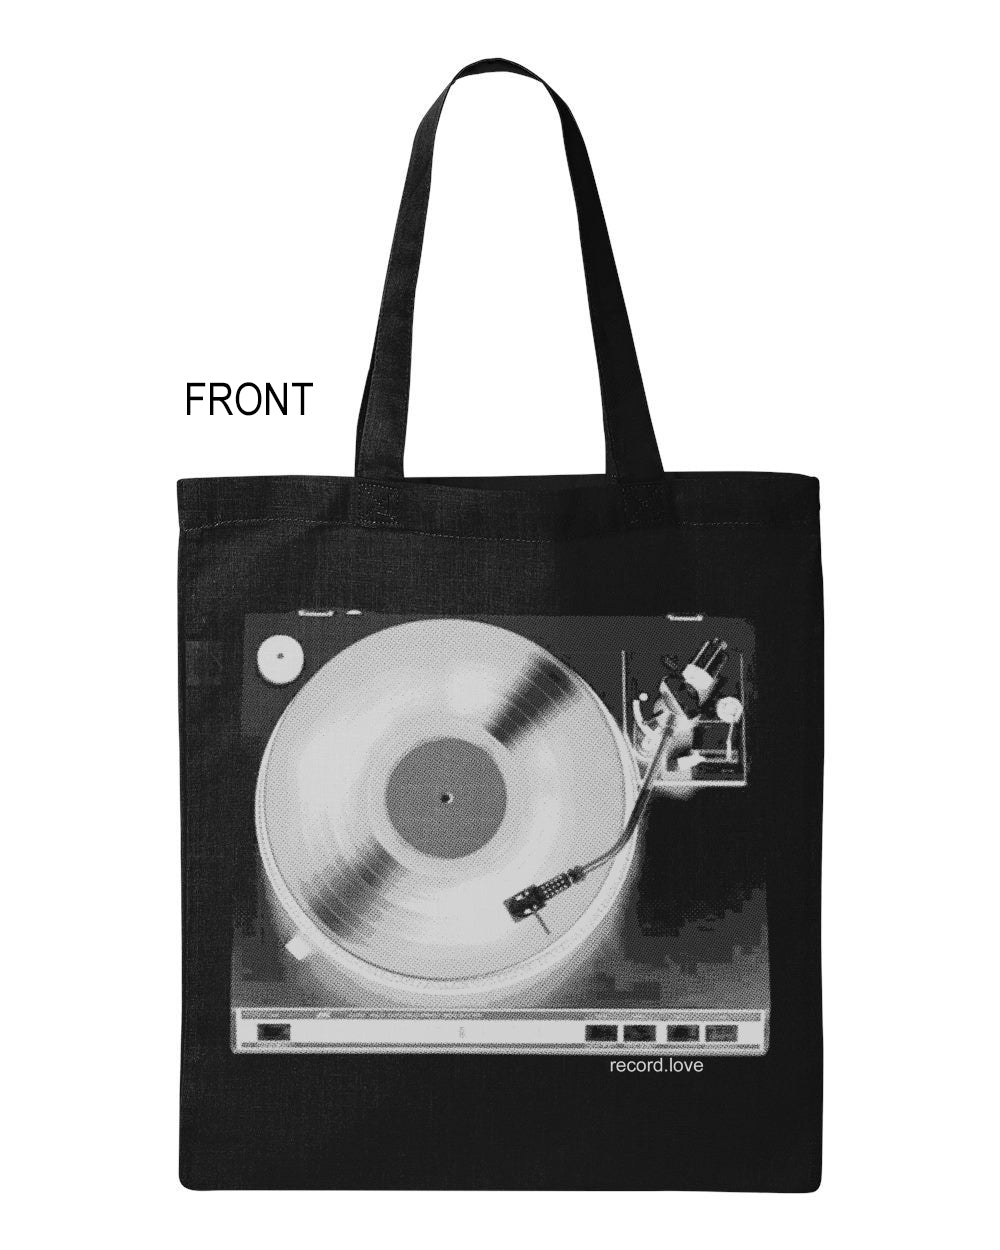 "Record LOVE" Tote canvas bag